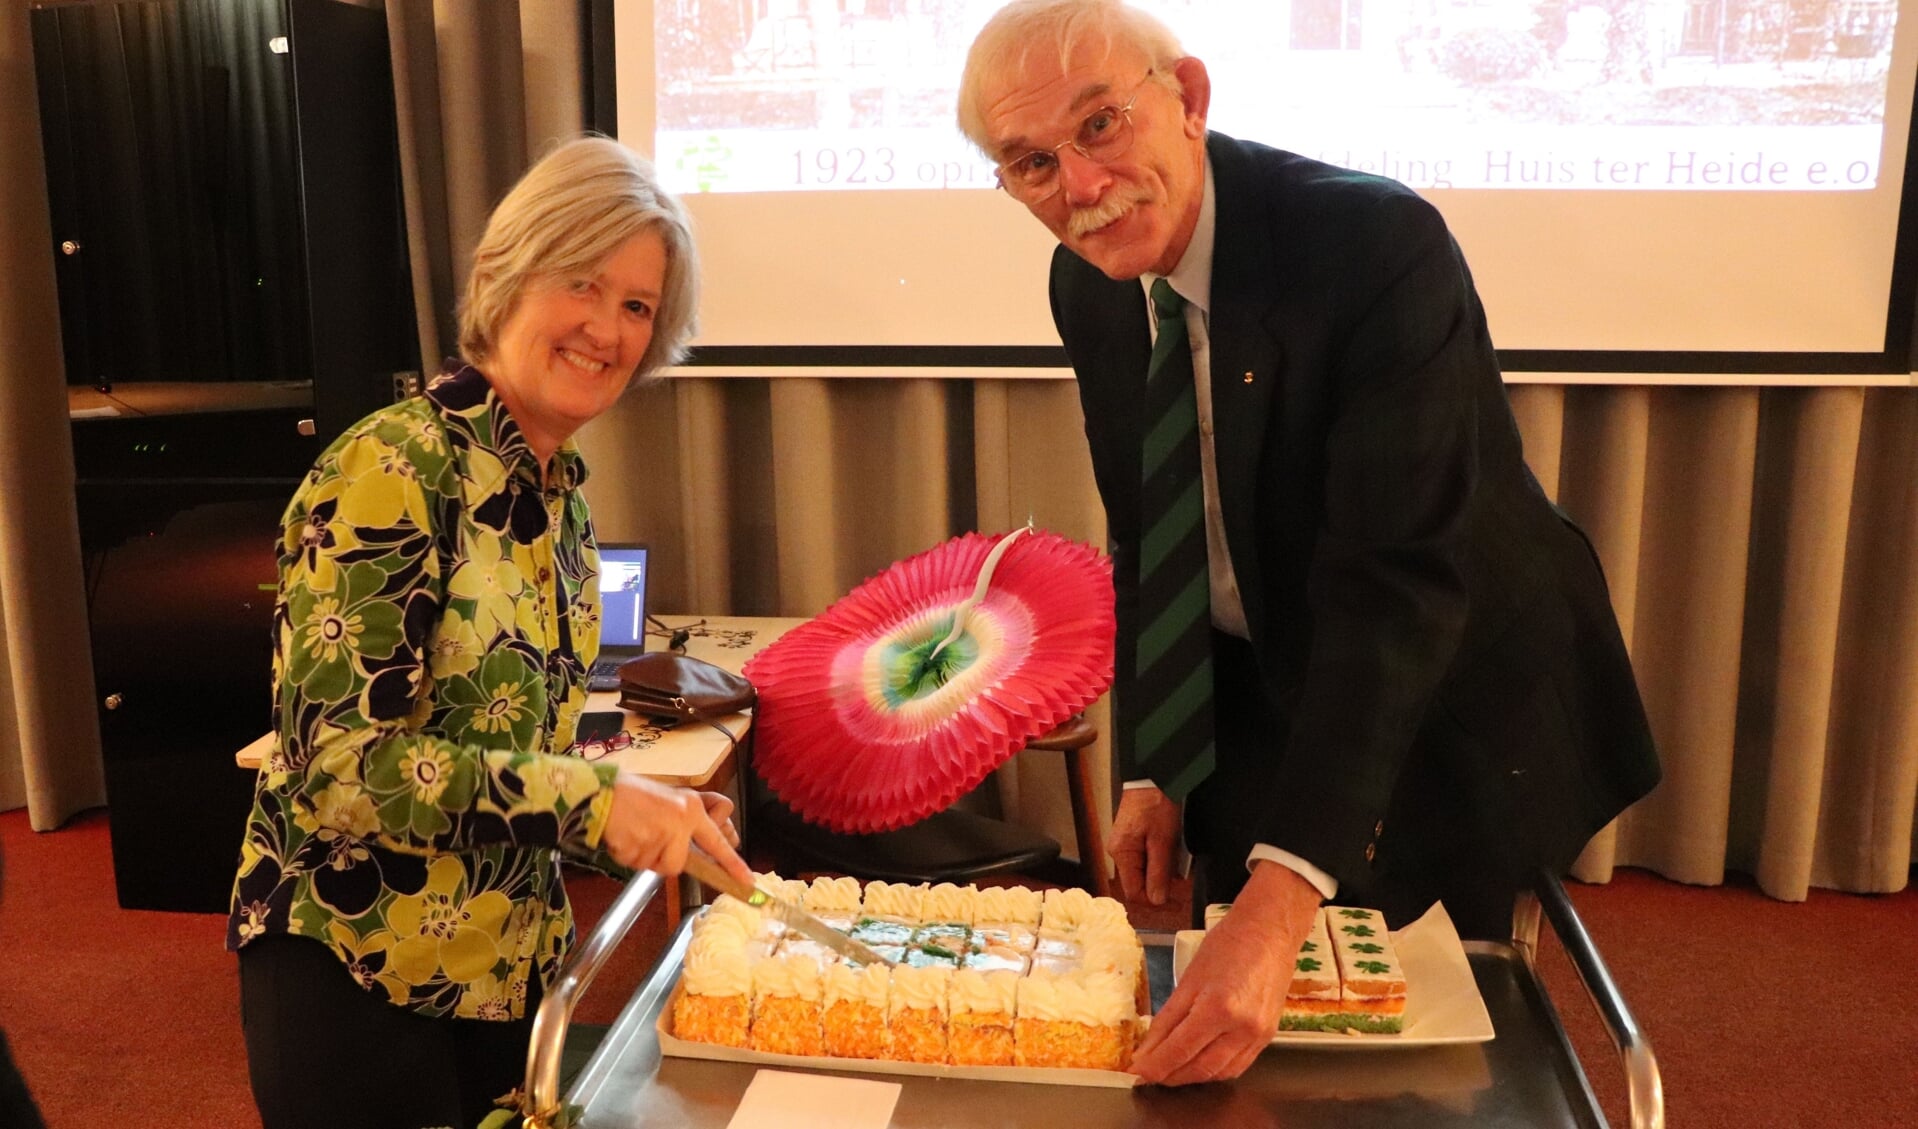 De taart wordt aangesneden door twee oud voorzitters Sylvia Bontan en Henri L’Honoré Naber.
